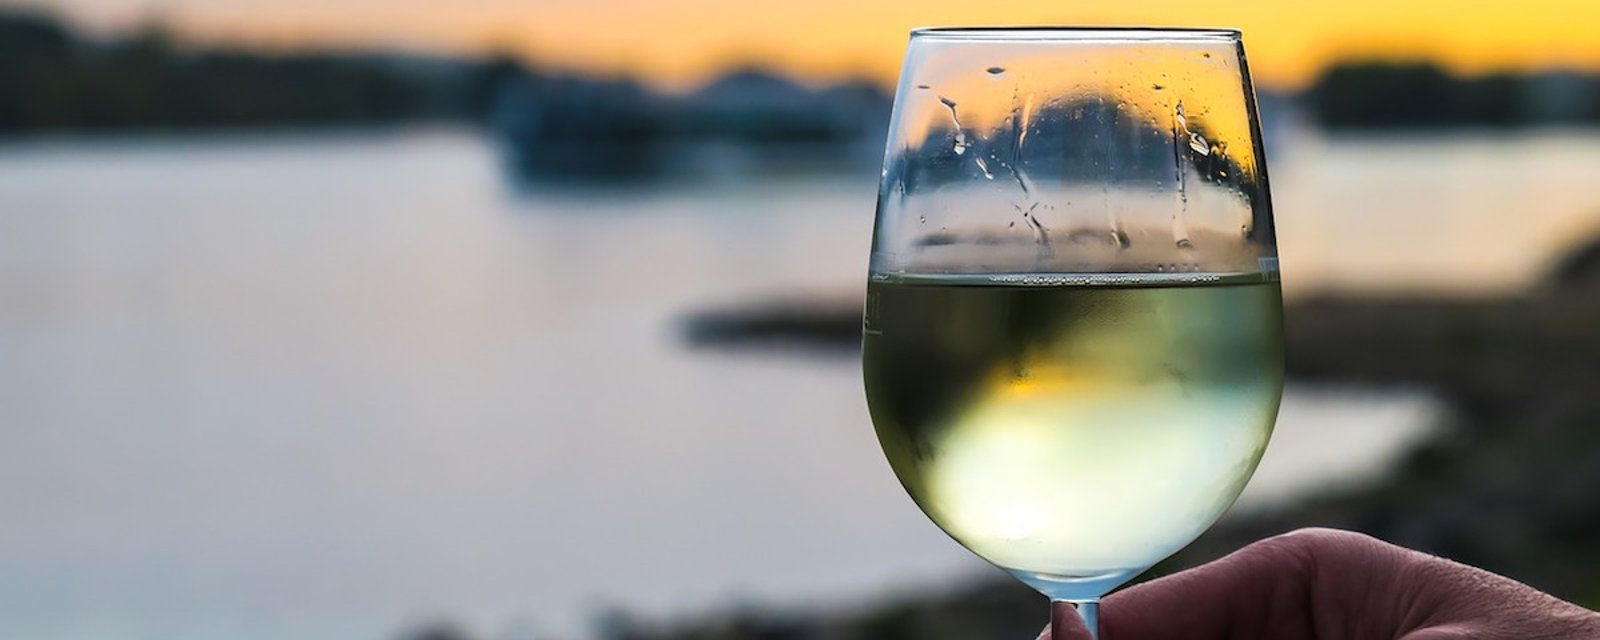 Selon des chercheurs, boire deux verres de vin blanc avant de dormir permettrait de maigrir!